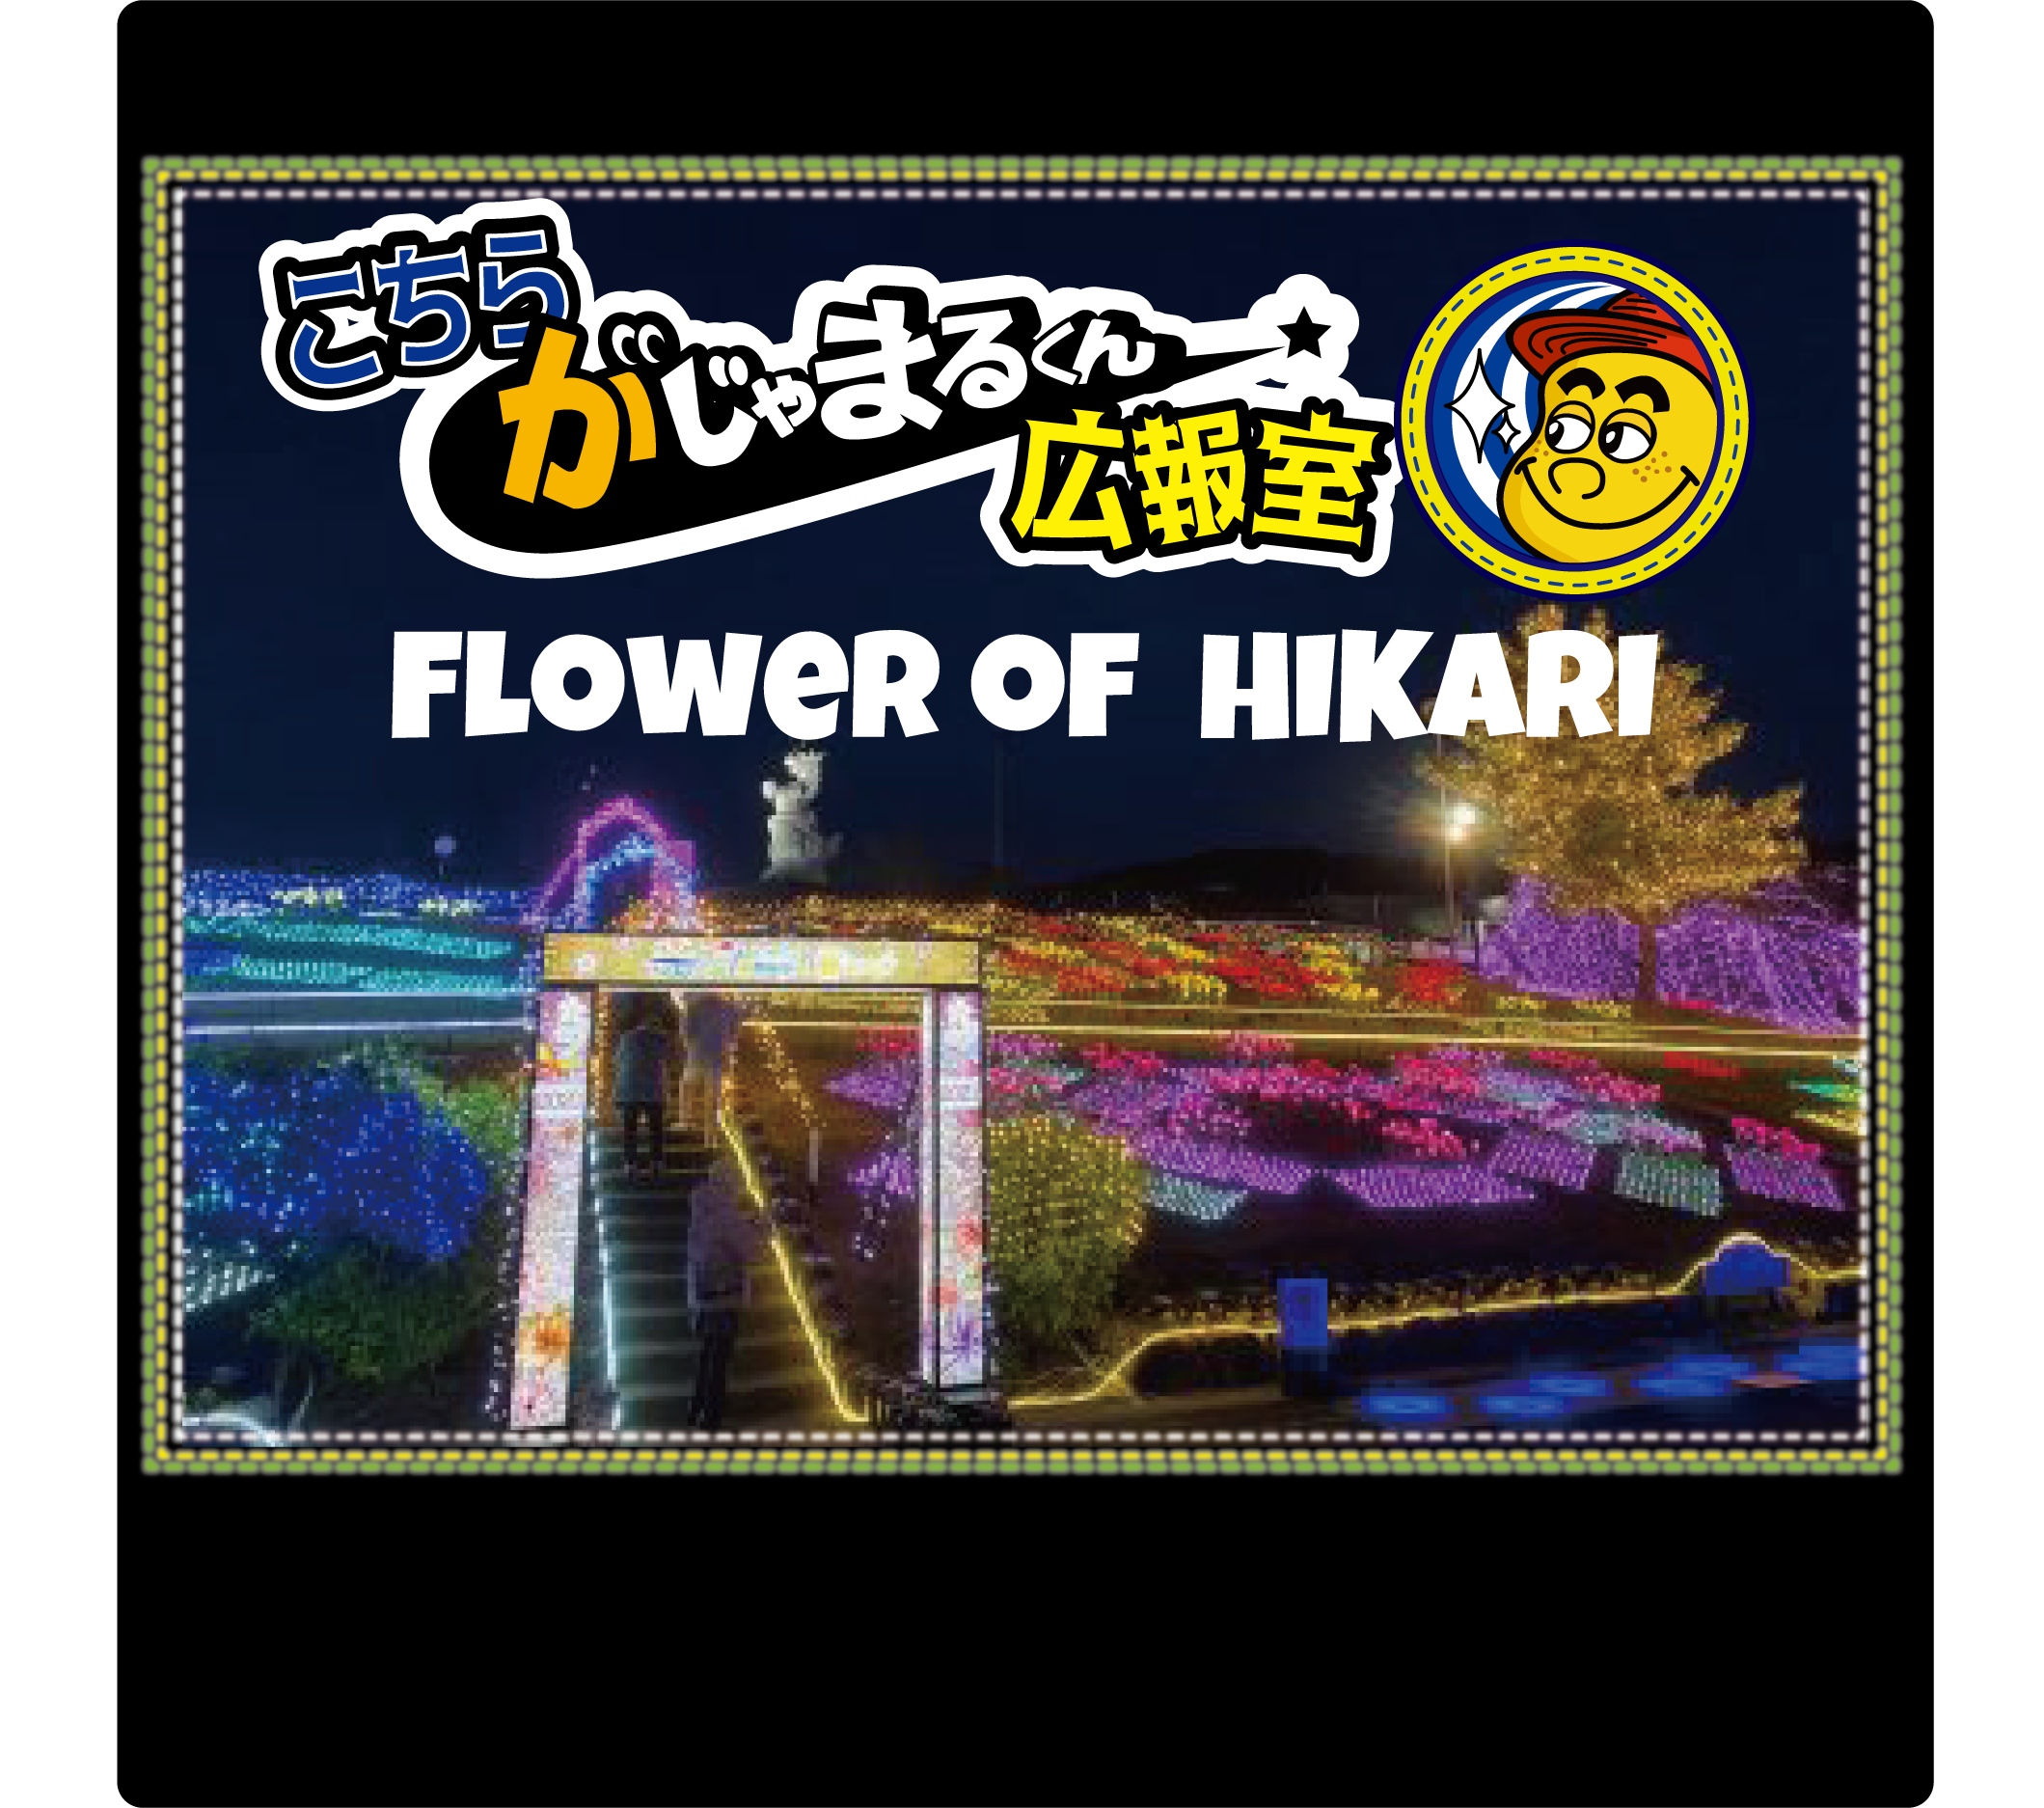 夕日とイルミネーションのコラボがたまらない！Flowers of HIKARI